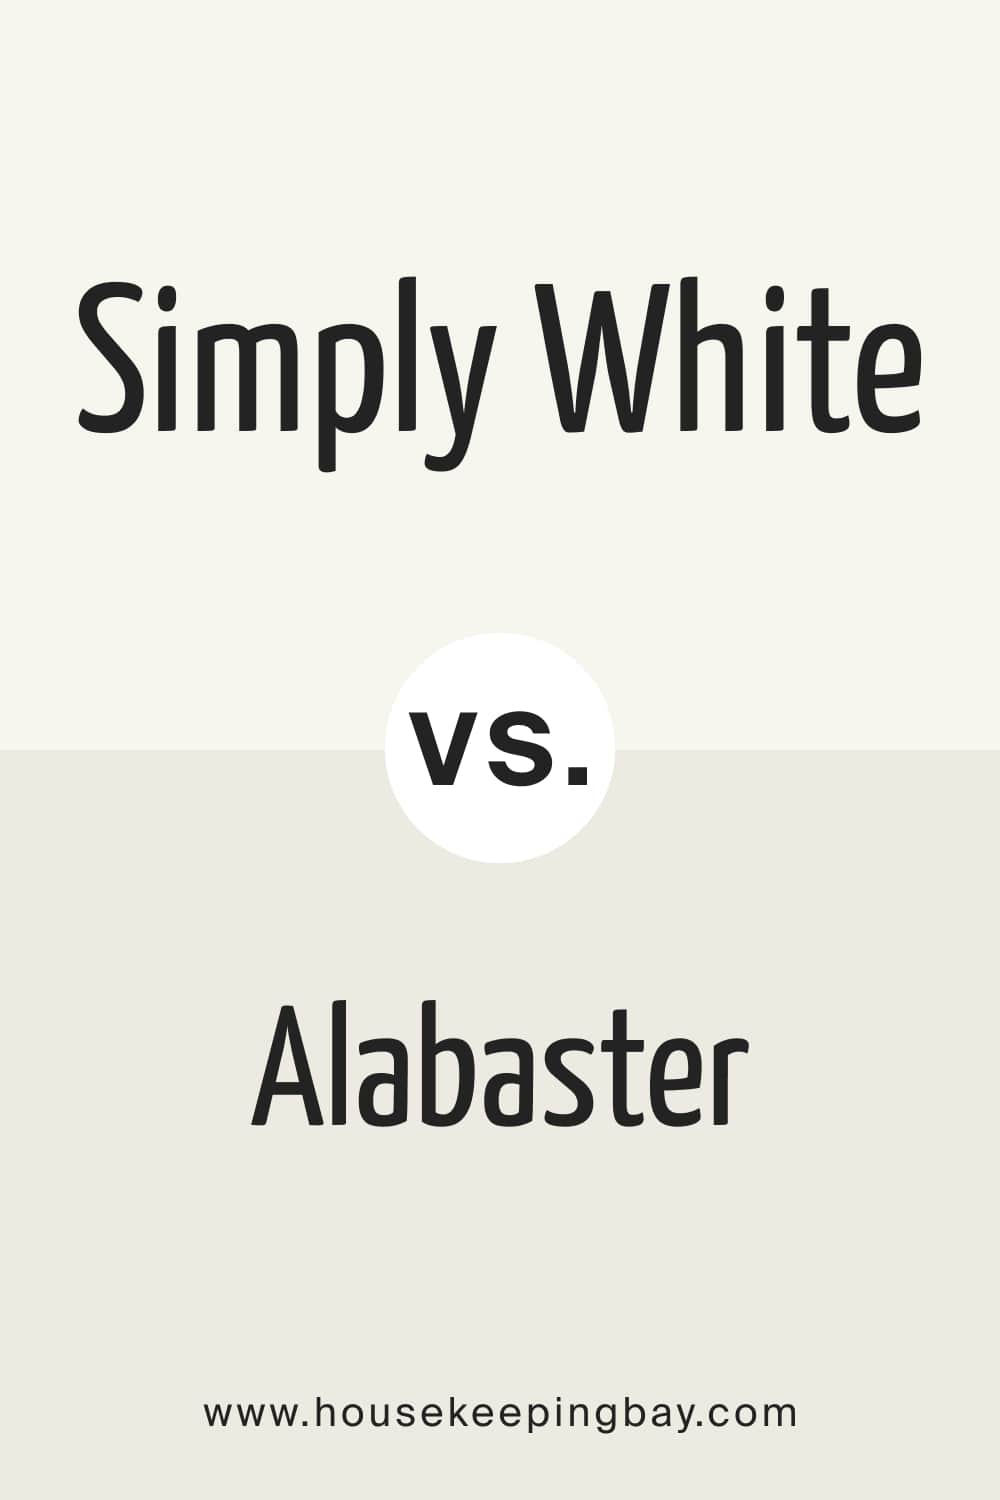 Simply White vs. Alabaster